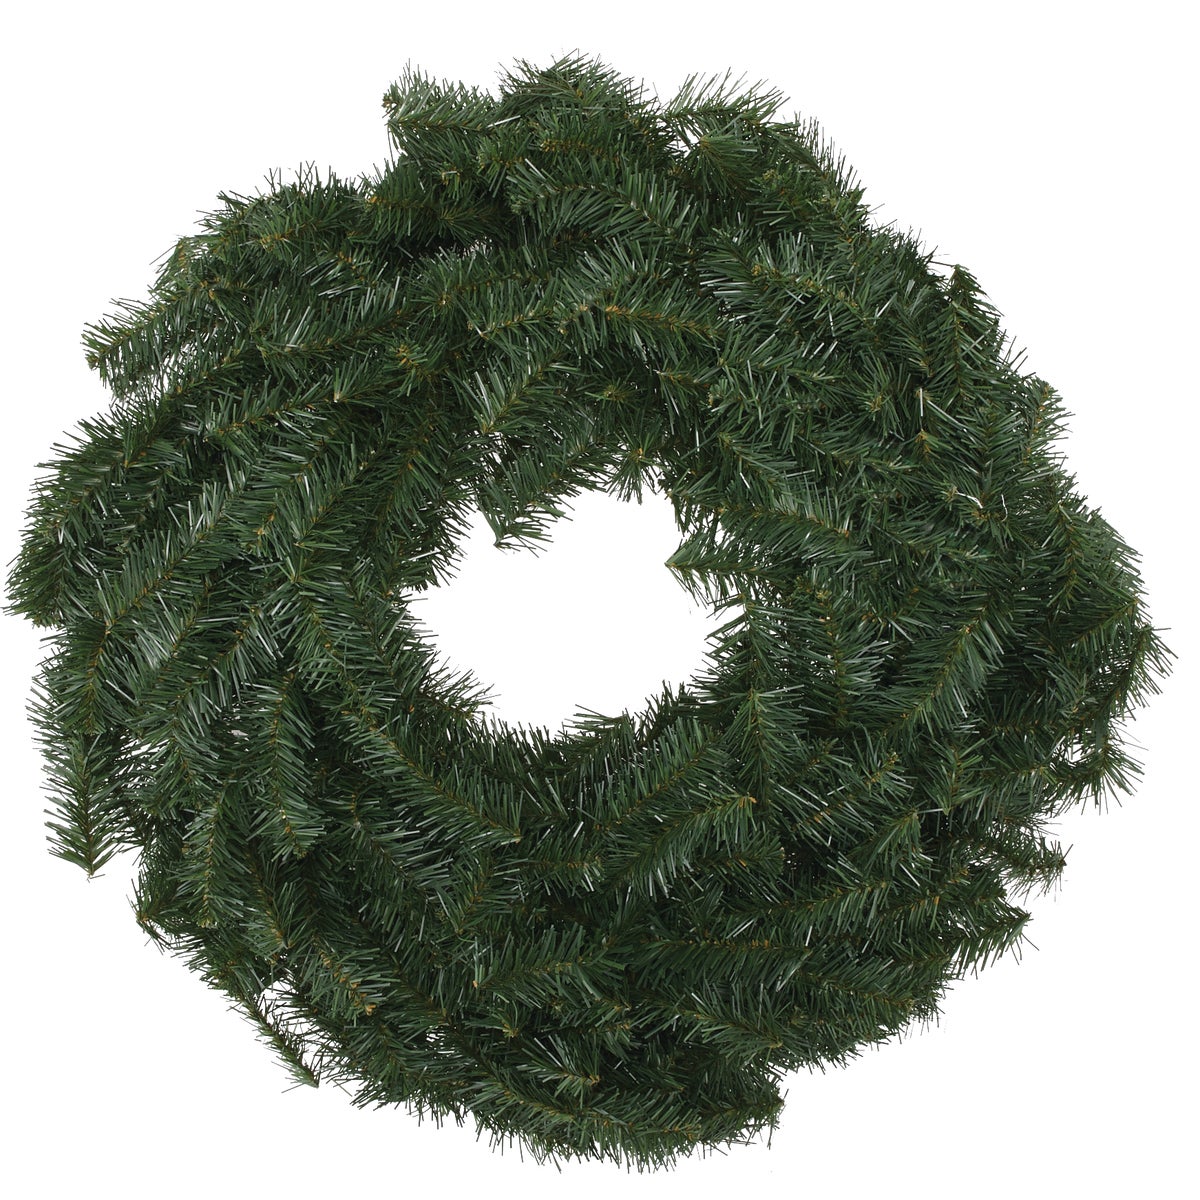 Item 901059, Unlit Canadian pine wreath.